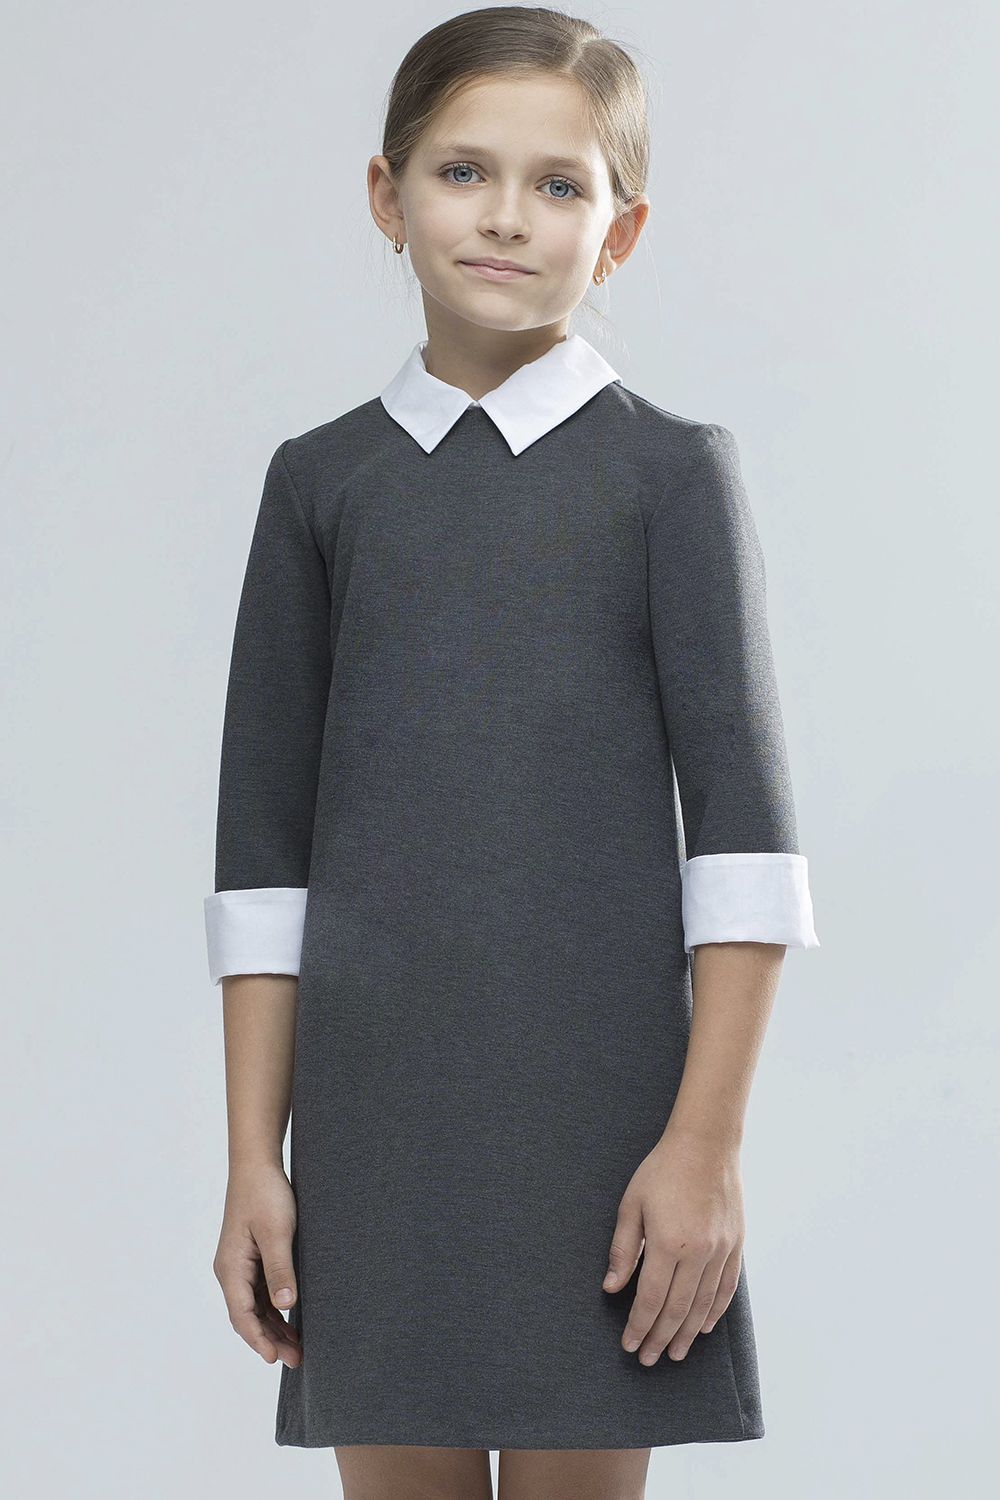 Платье Смена, размер 146, цвет серый 17c86 - фото 1